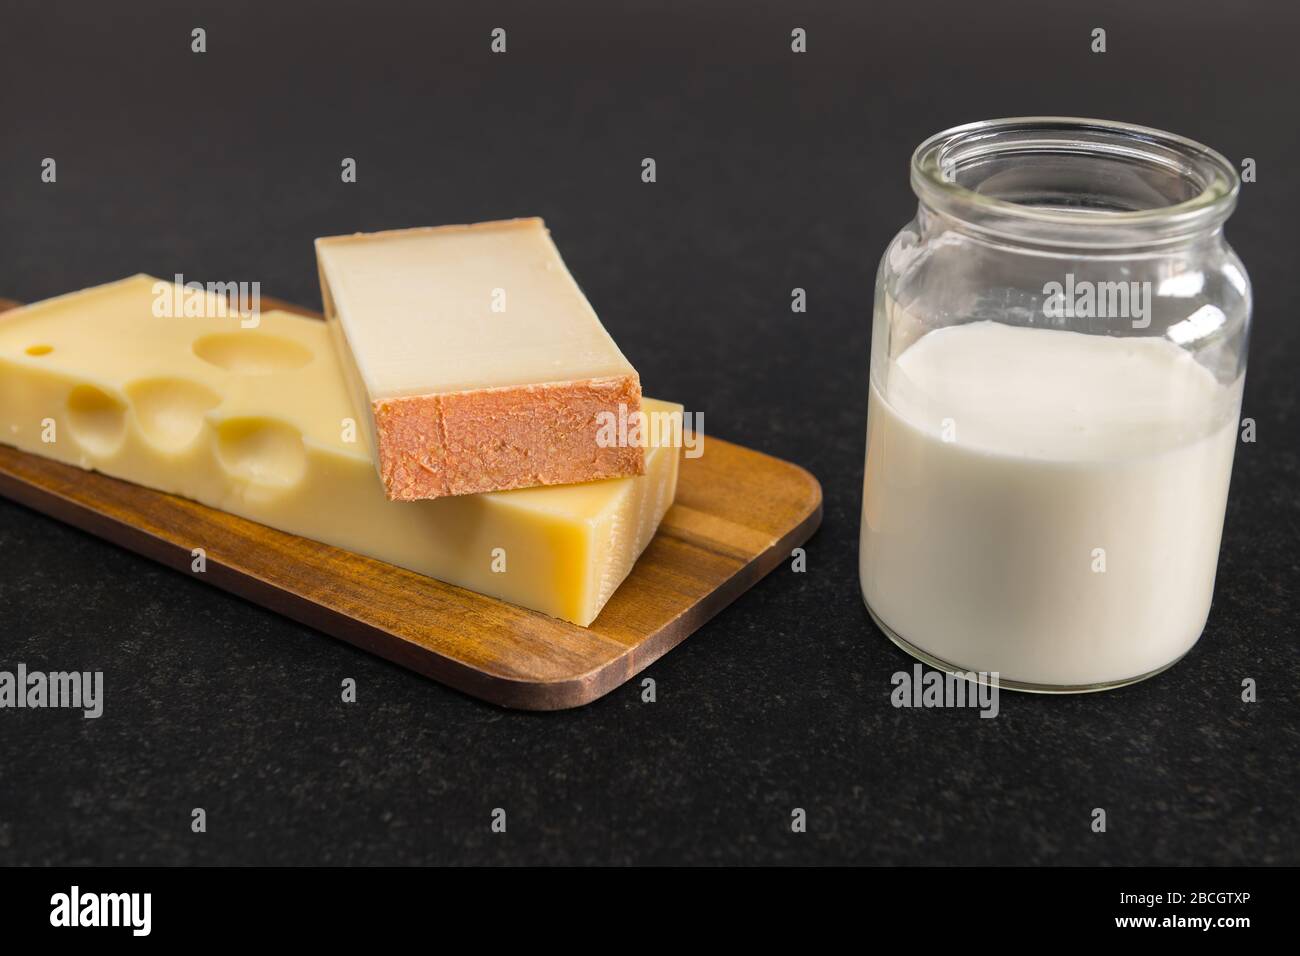 Formaggio Emmental e formaggio Gruyere su una tavola di legno accanto ad un bicchiere riempito di latte su un tavolo nero. Foto Stock